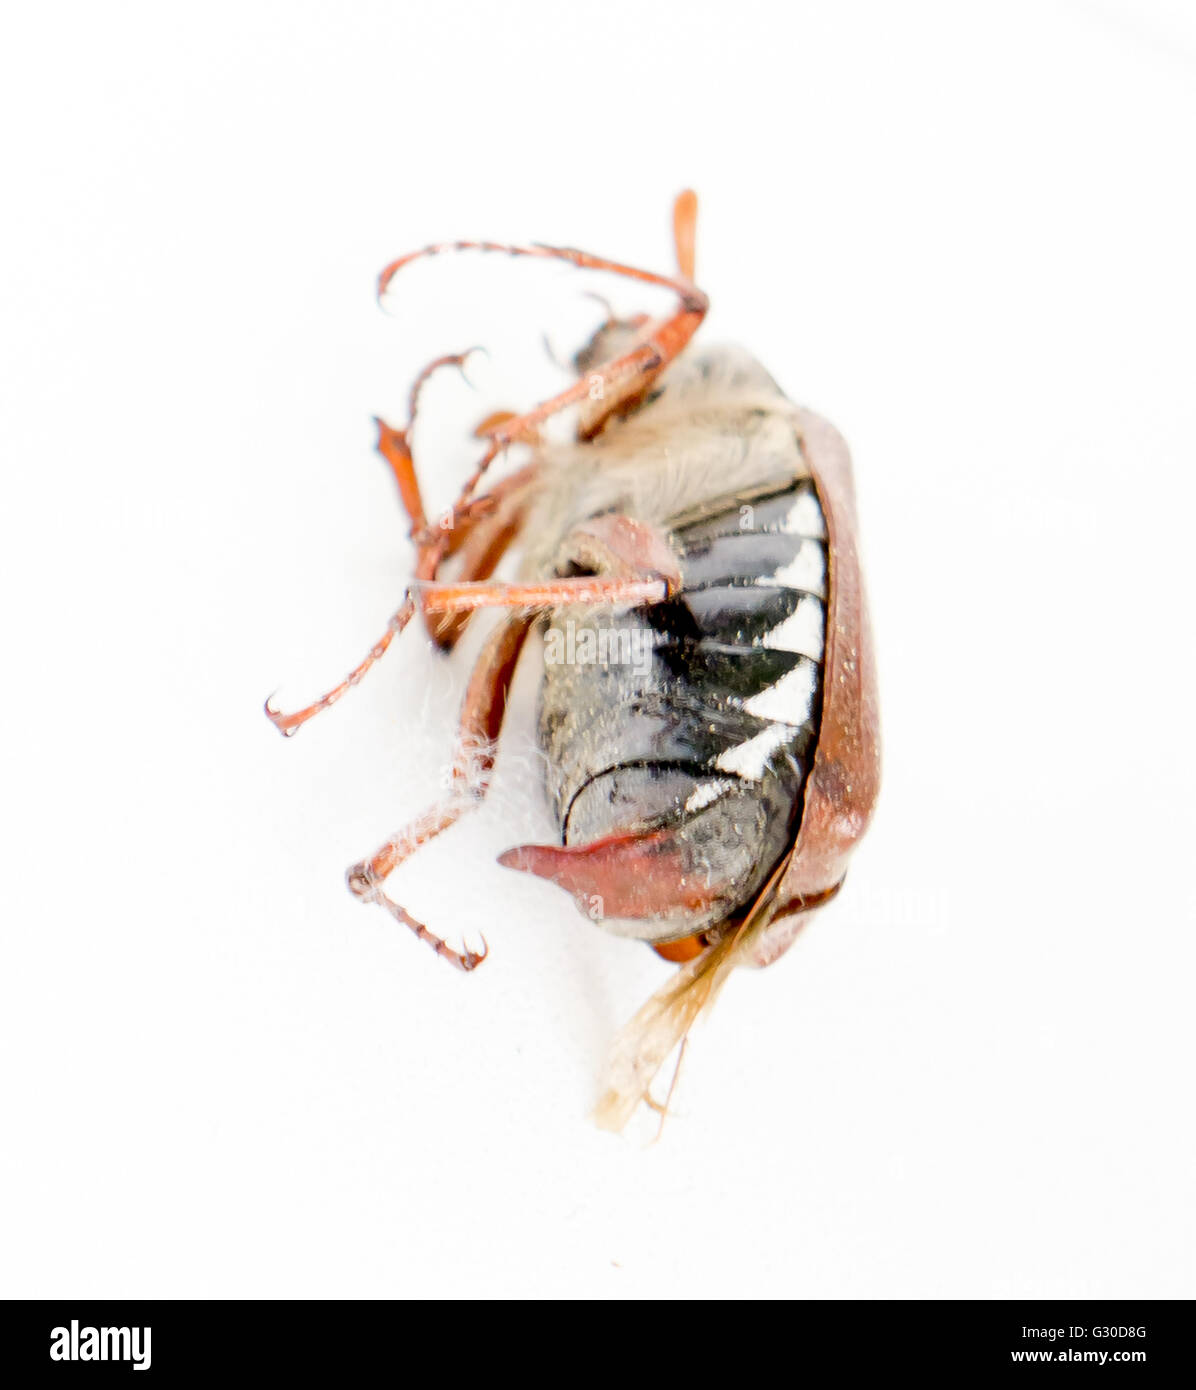 Les morts bug hanneton européen. Banque D'Images